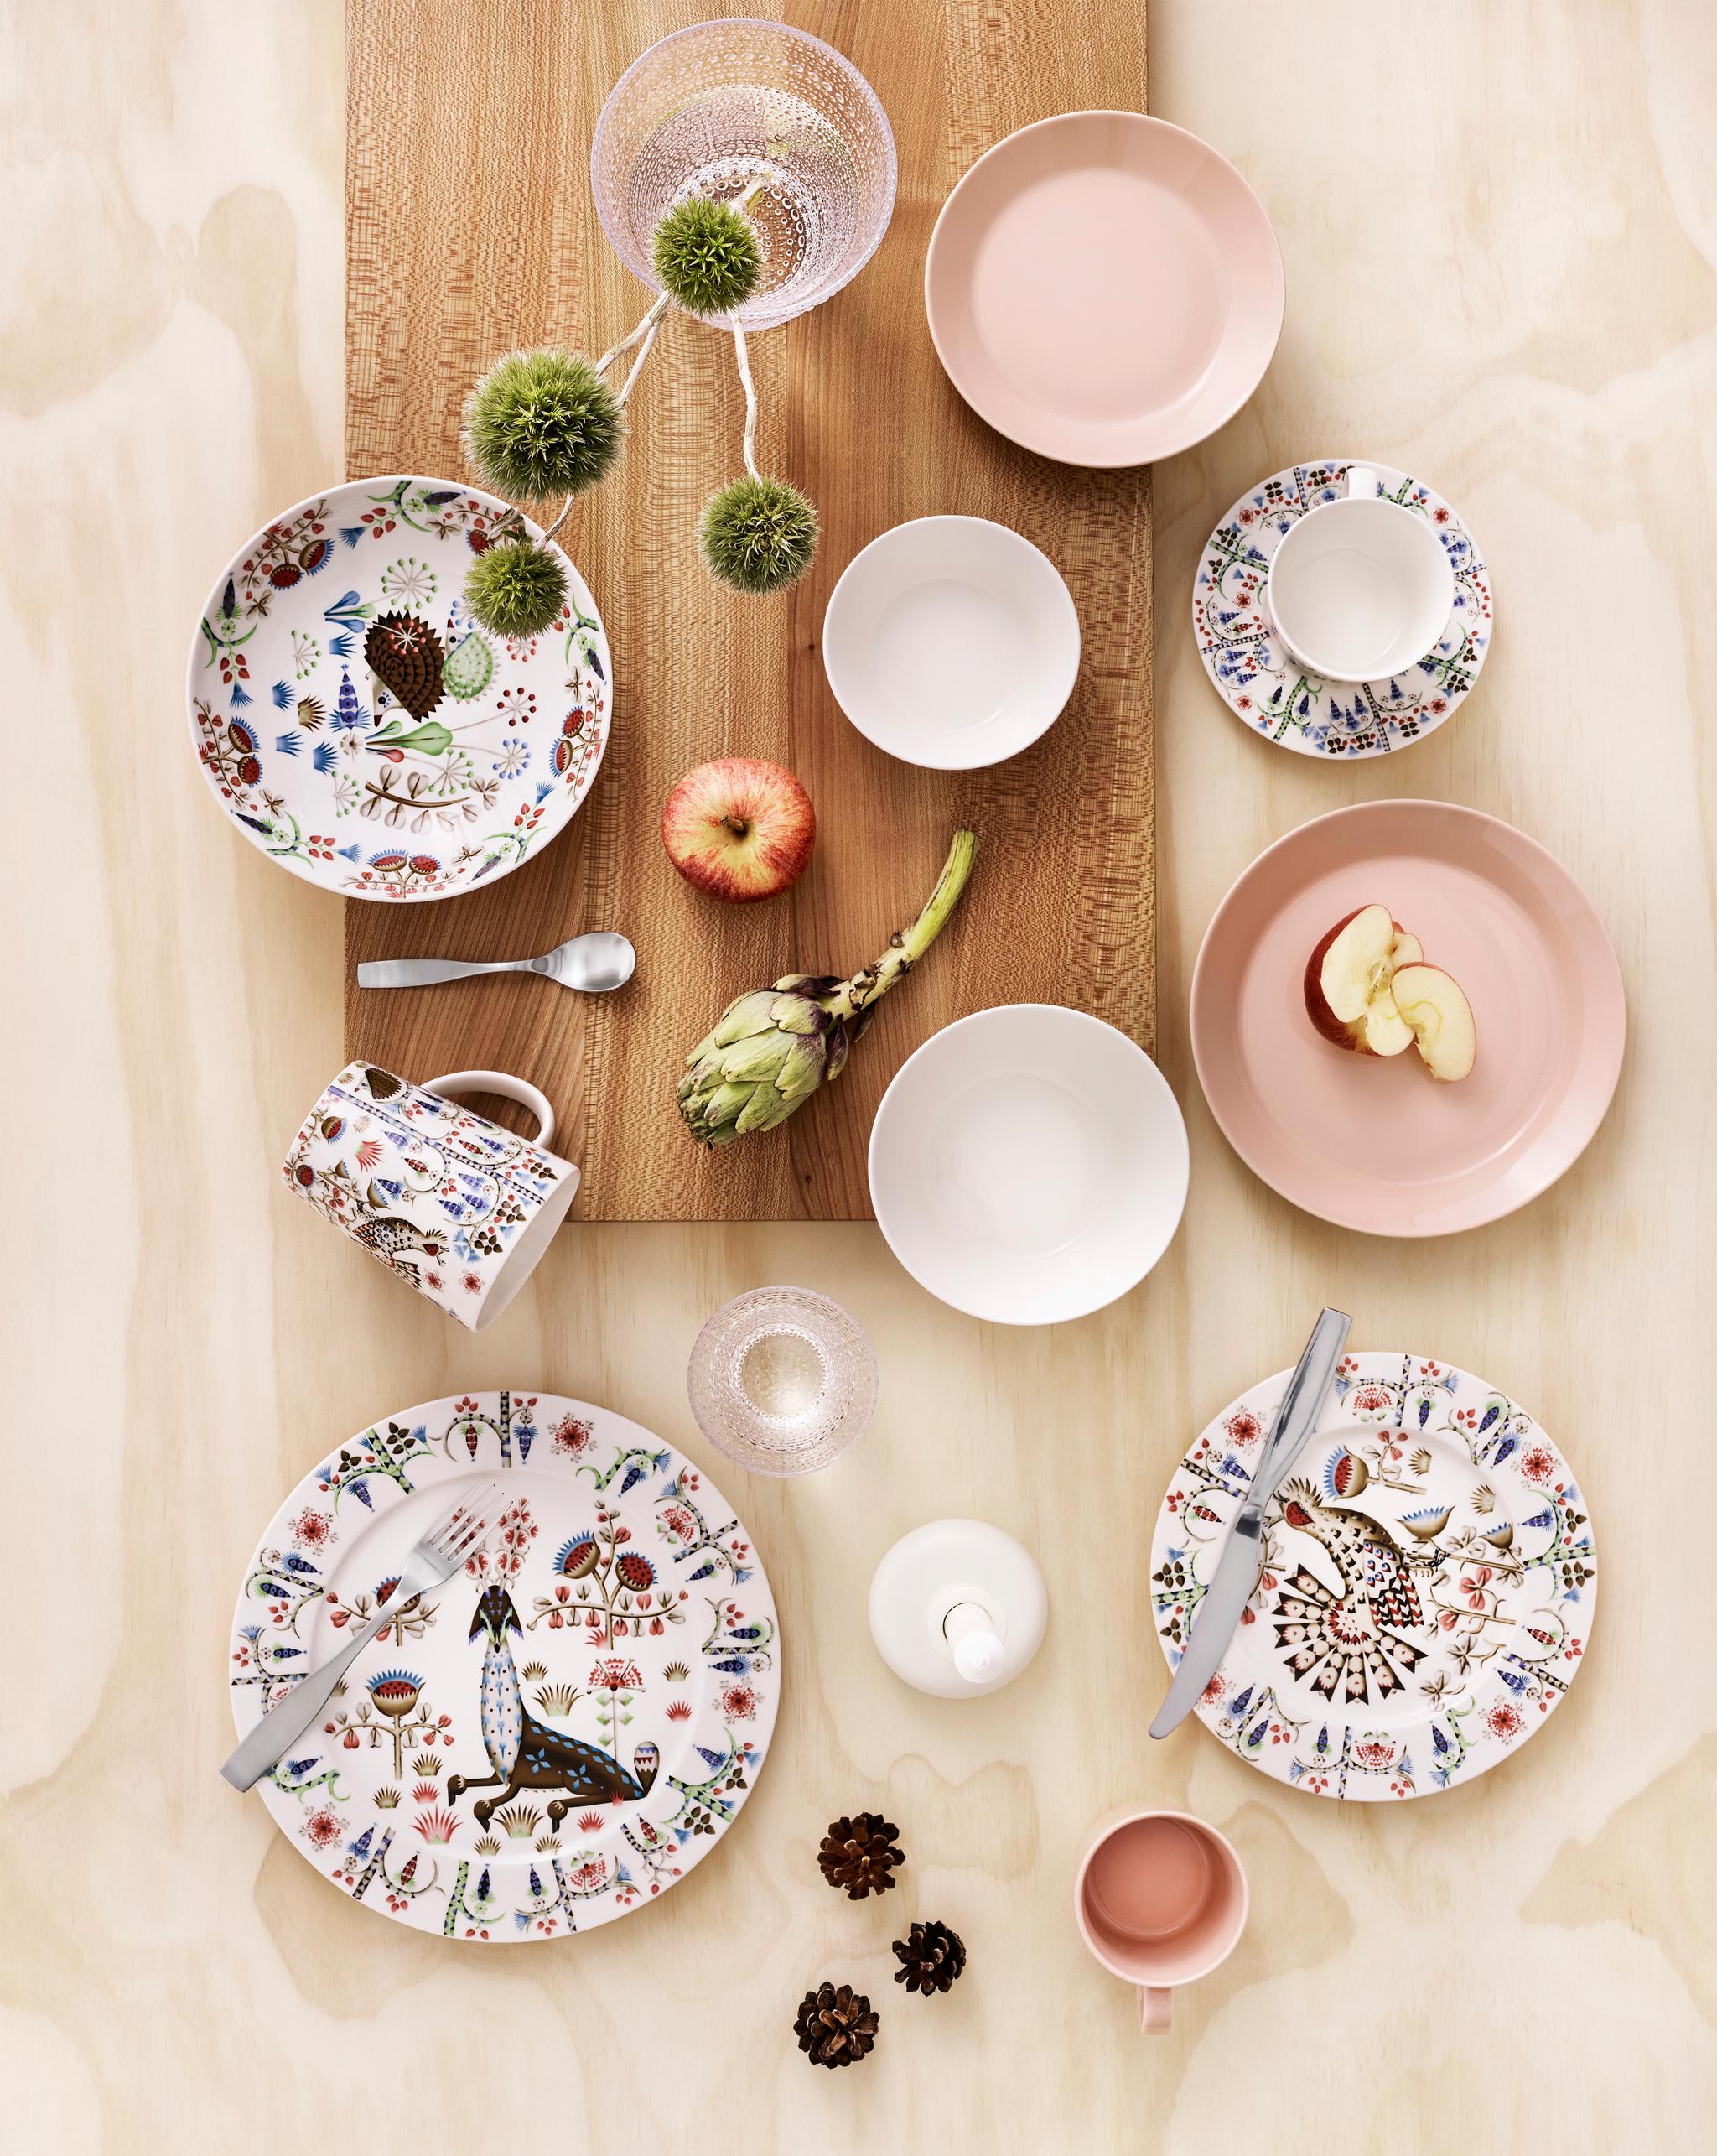 Iittala 2019 Taika Teema Kastehelmi Nappula erikokoiset lautaset kuviolliset lautaset maljakko lasit